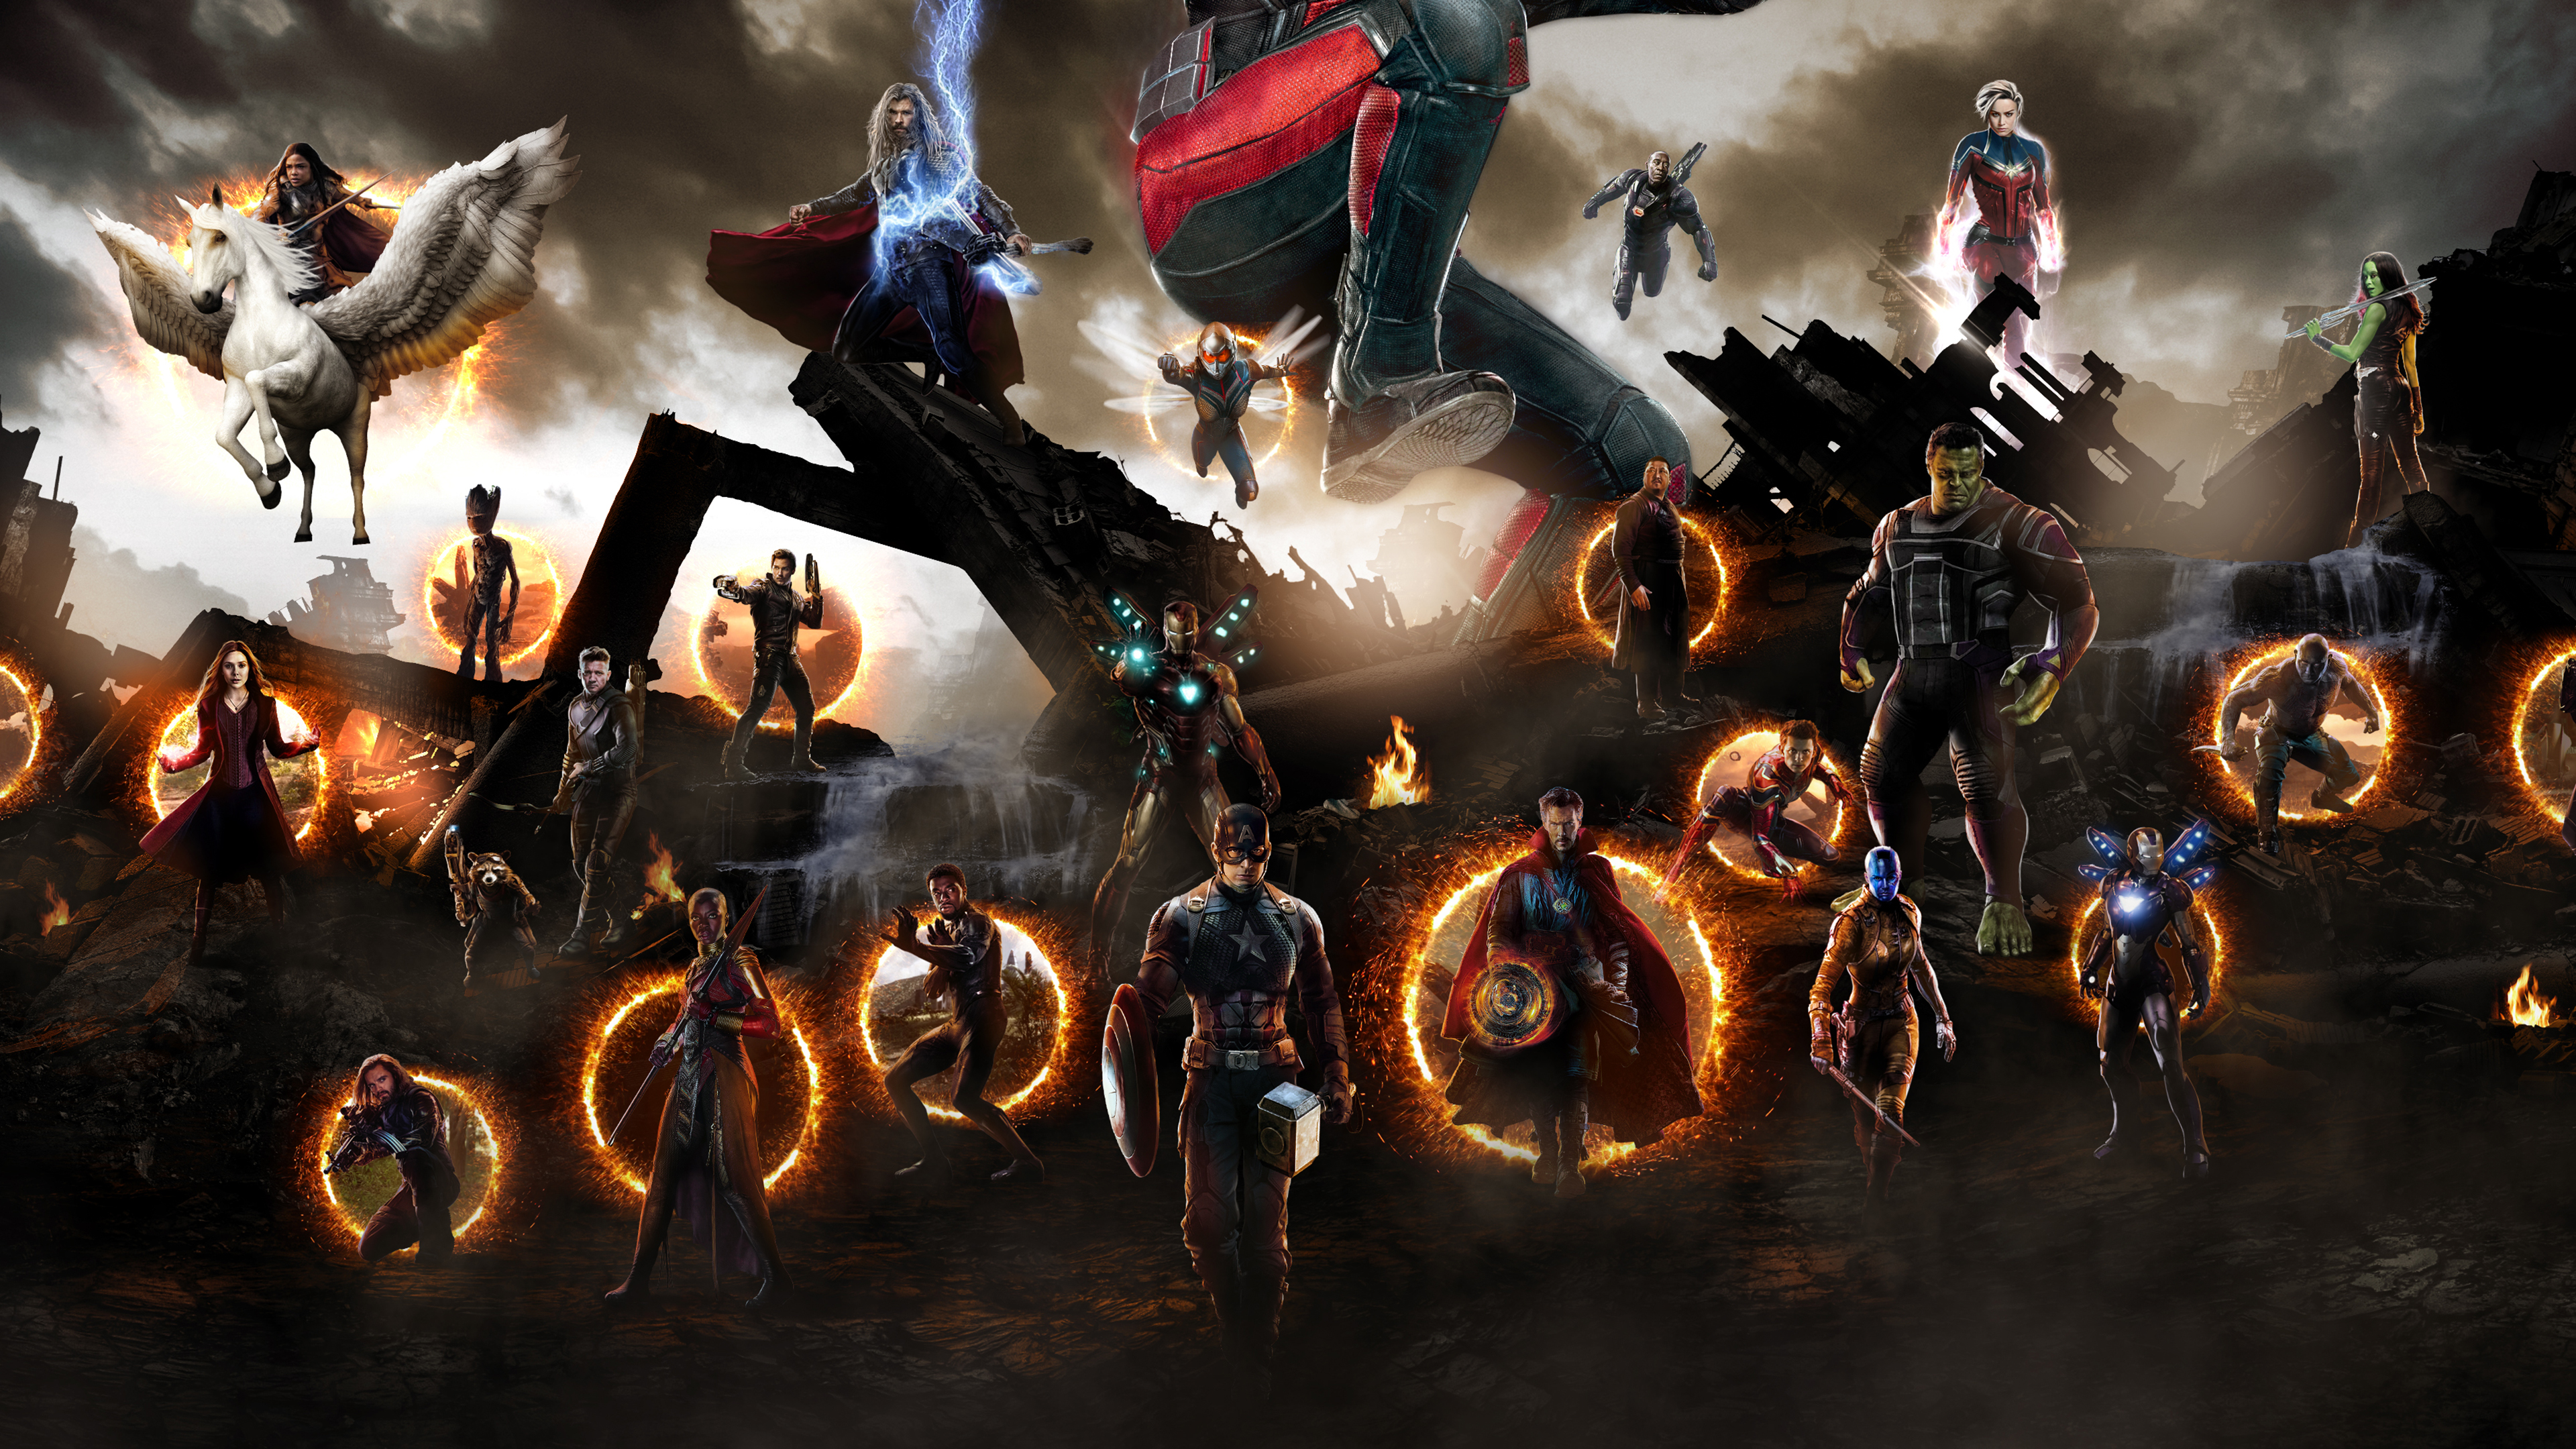 Avengers Endgame Final Battle 4K Wallpapers